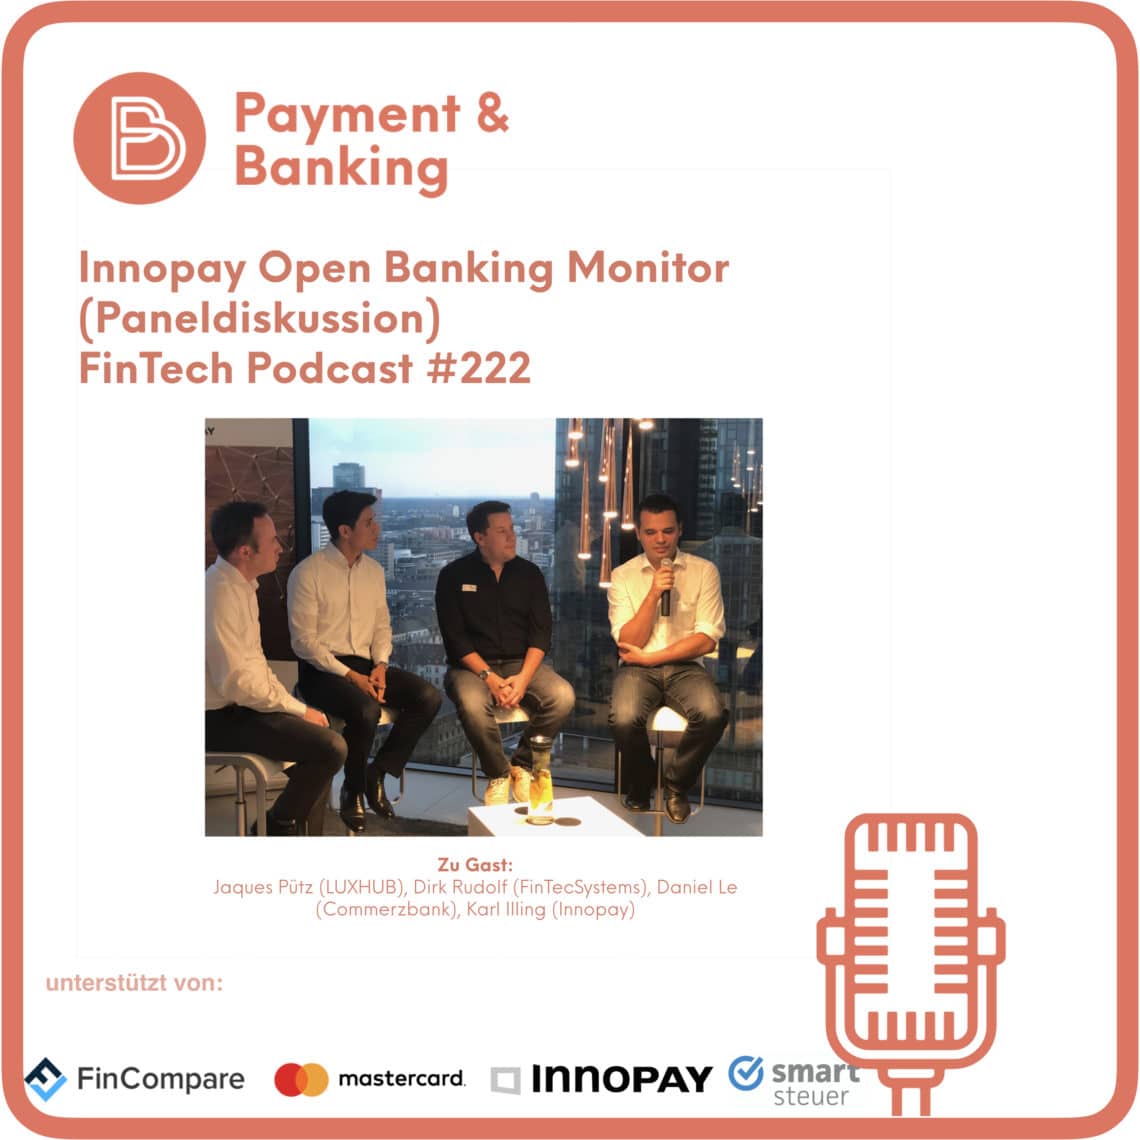 Der Innopay Open Banking Monitor Deutschland - FinTech Podcast #222